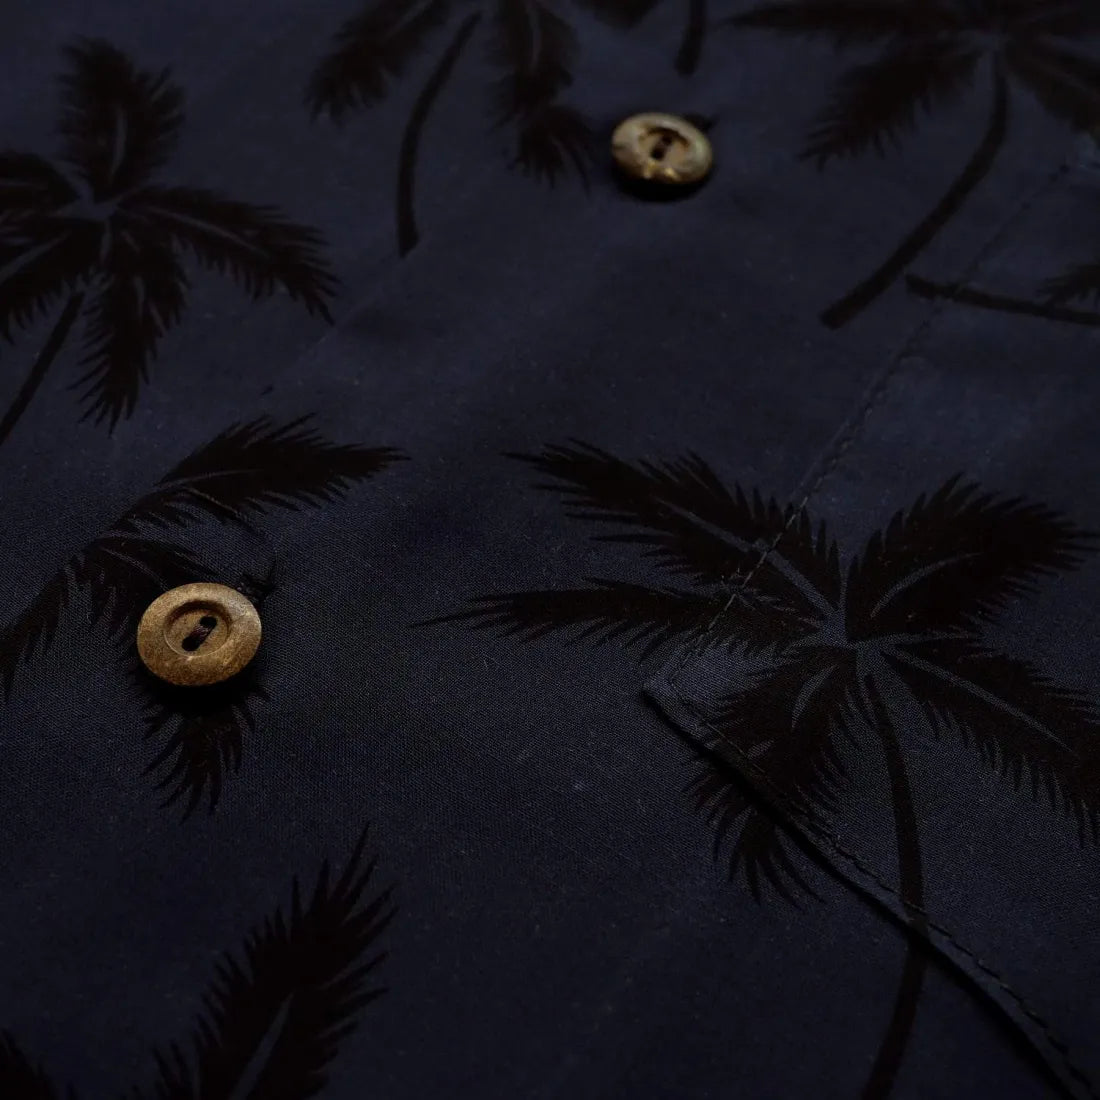 Balmy Black Hawaiian Rayon Shirt - Made In Hawaii